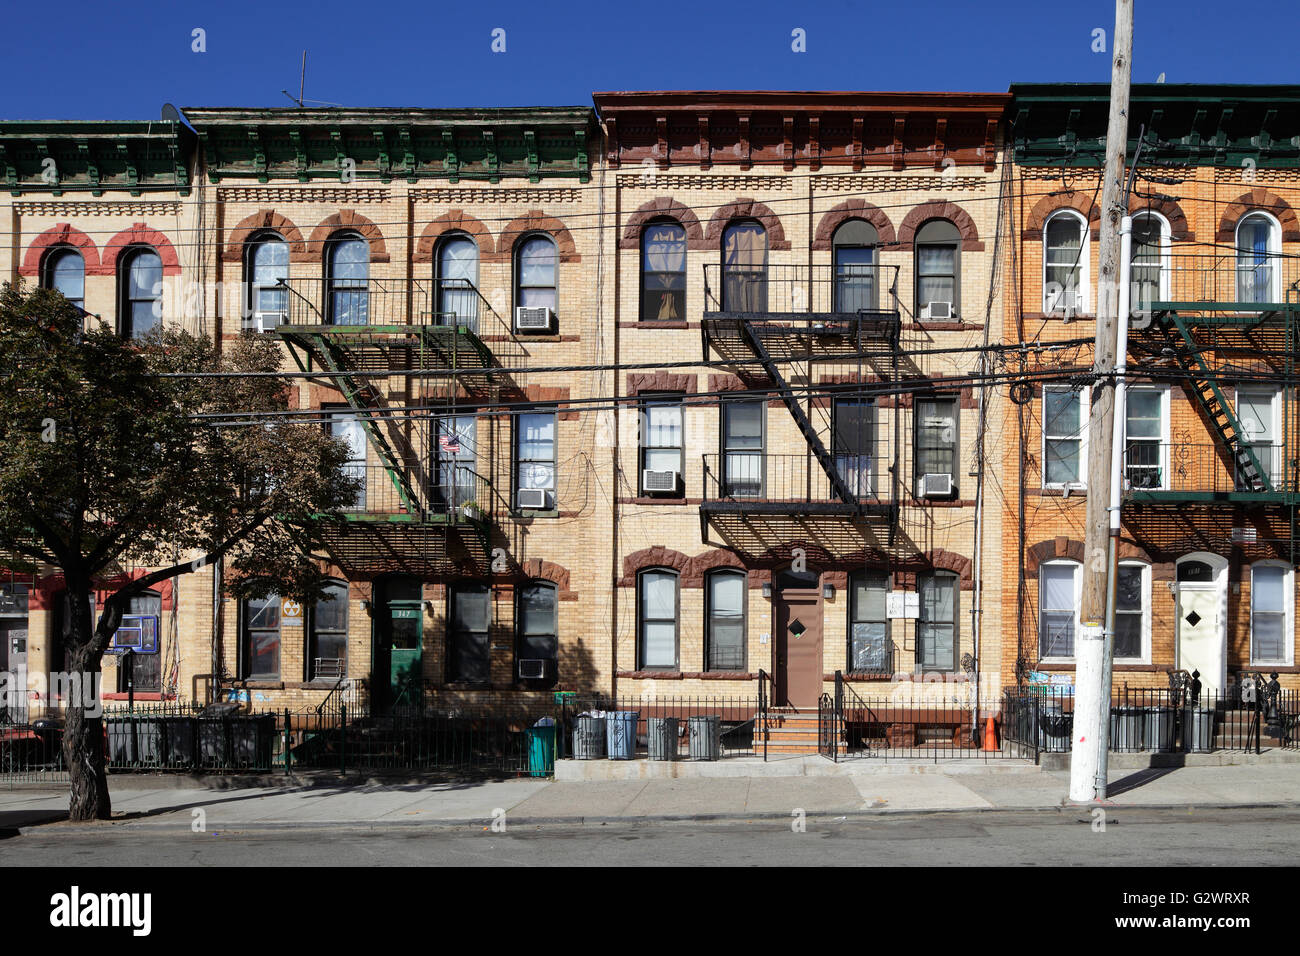 26.10.2015, New York City, New York, USA - Wohngebäude in Williamsburg. 00P151026D214CAROEX. JPG - nicht für den Verkauf in G E R M A N Y, A U S T R I A S W I T Z E R L A N D [MODEL-RELEASE: nicht anwendbar, PROPERTY-RELEASE: Nein, (C) Caro Fotoagentur / Muhs, http://www.caro-images.com, info@carofoto.pl - jegliche Nutzung dieses Bildes unterliegt GEMA!] Stockfoto